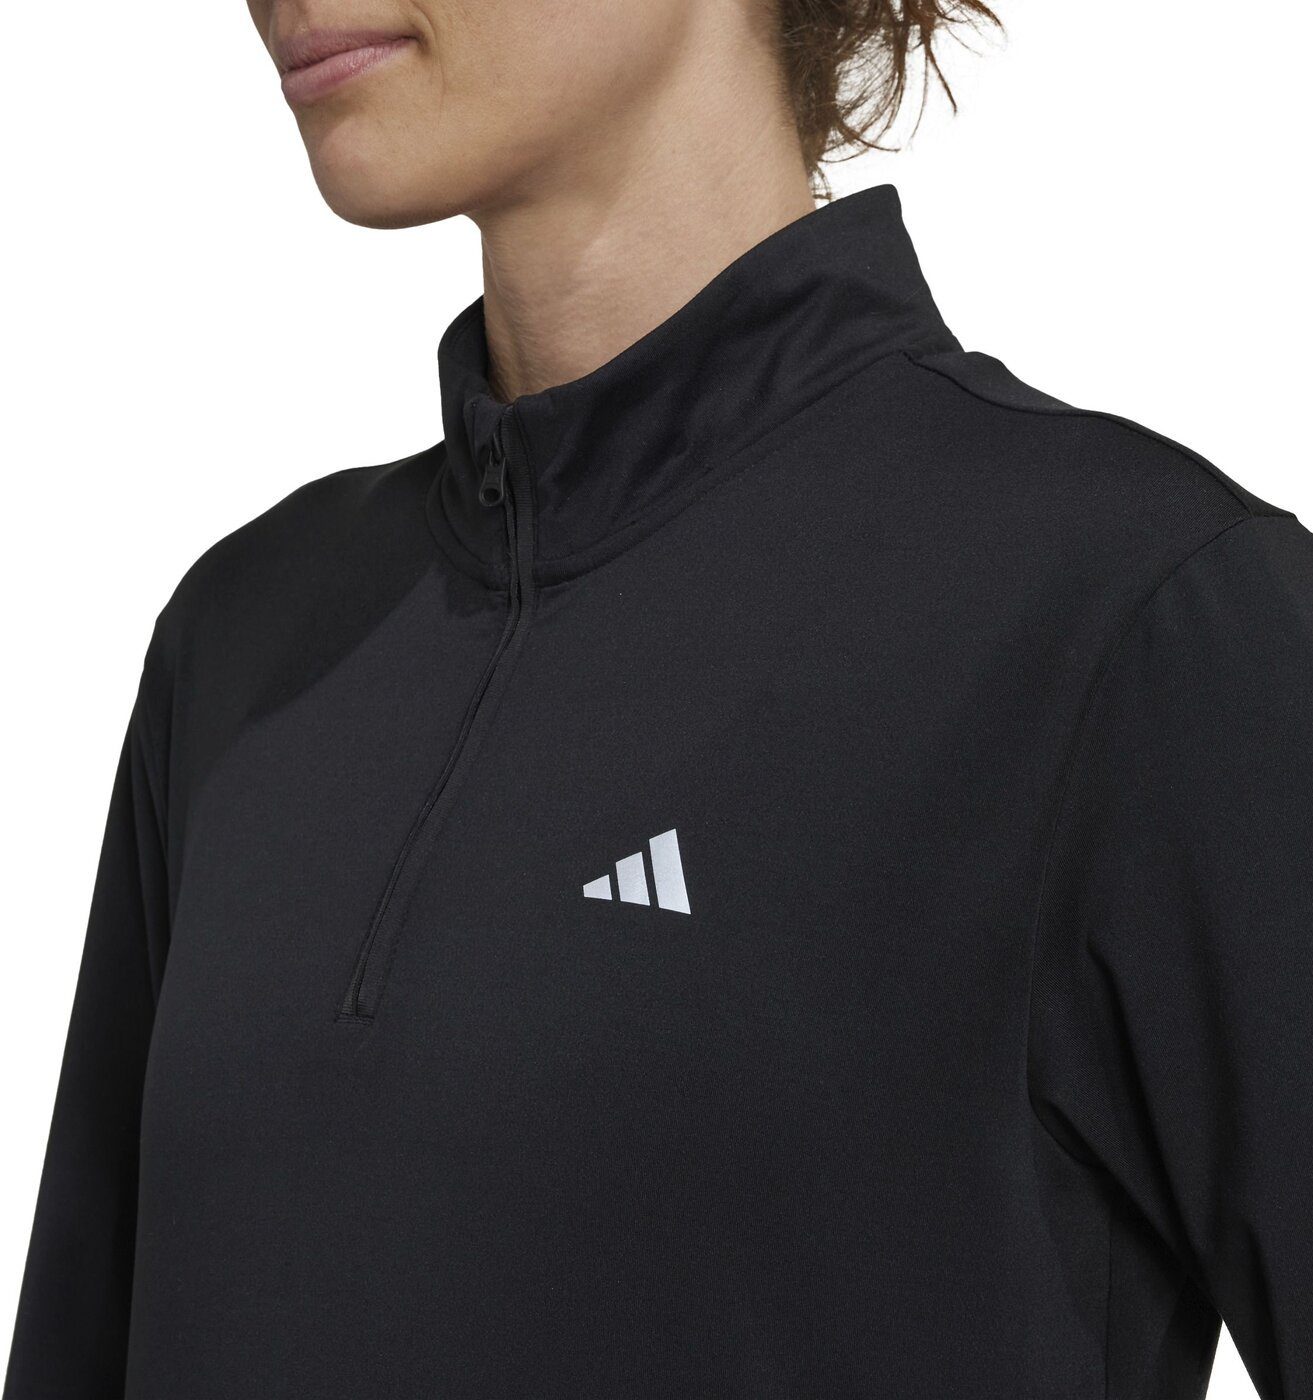 WARM TF Sportswear schwarz 14Z TP adidas Funktionsshirt